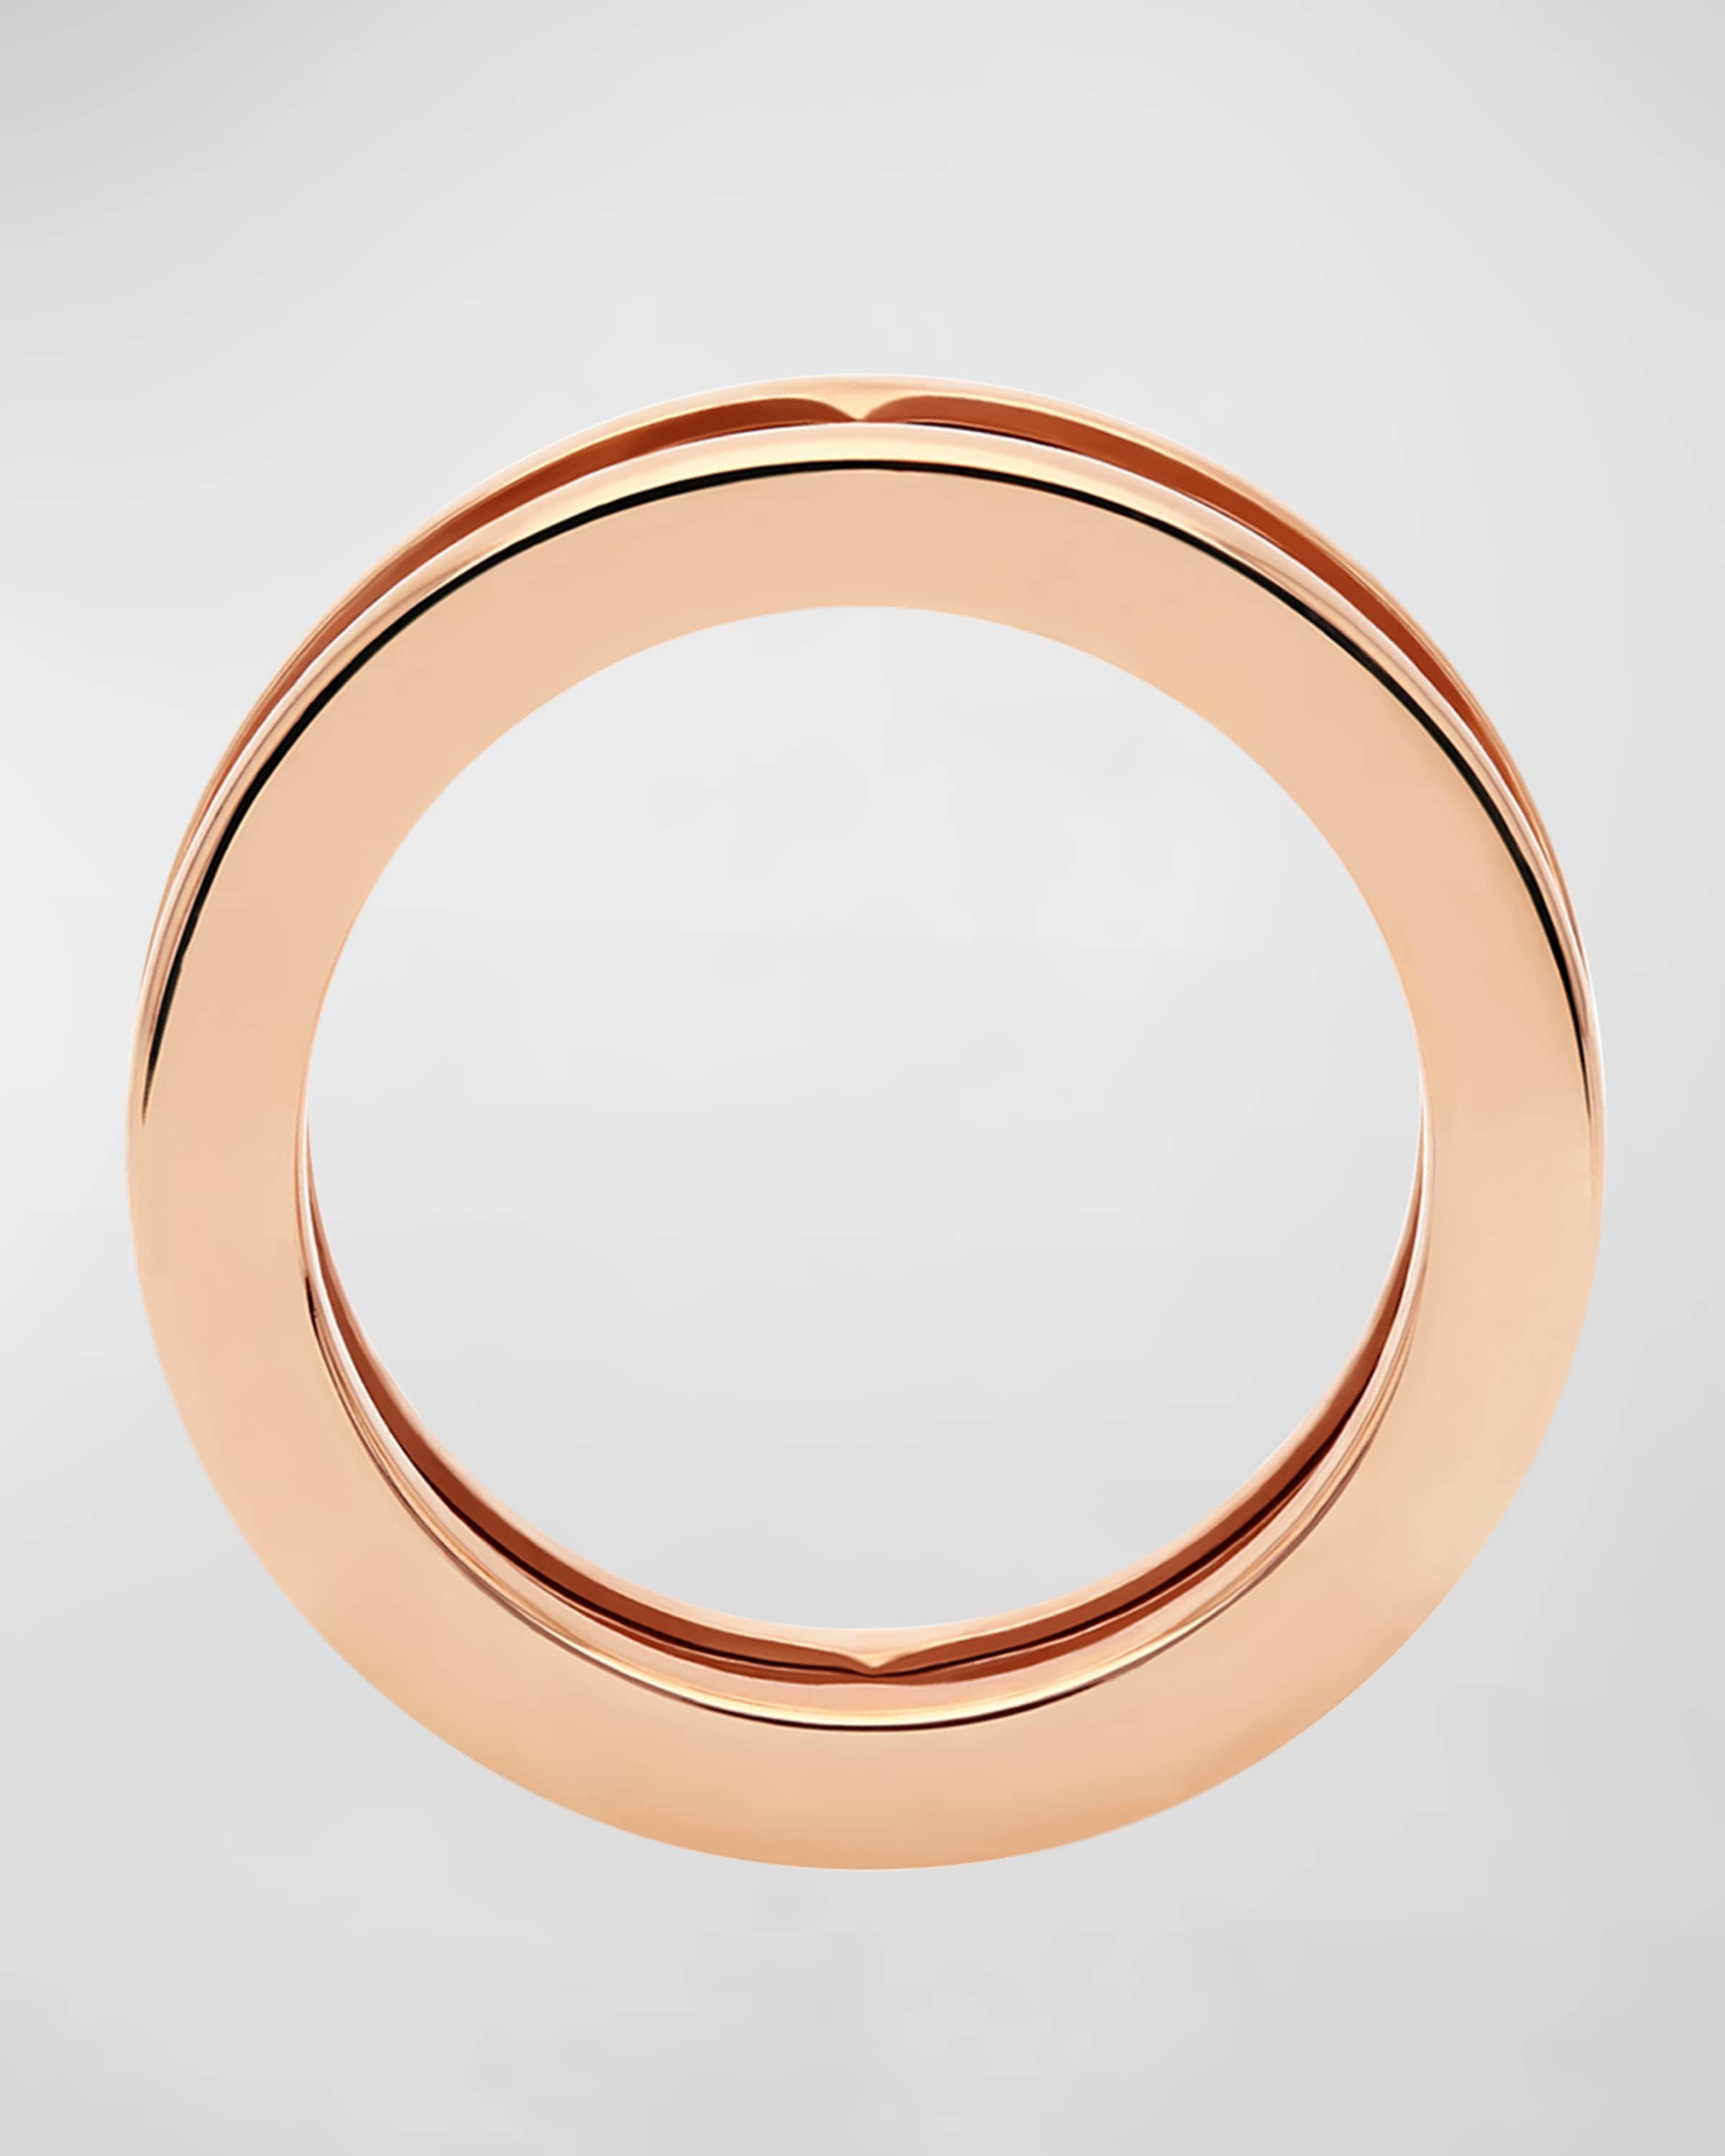 B.Zero1 Rose Gold 1-Band Logo Ring, EU 52 / US 6 - 3